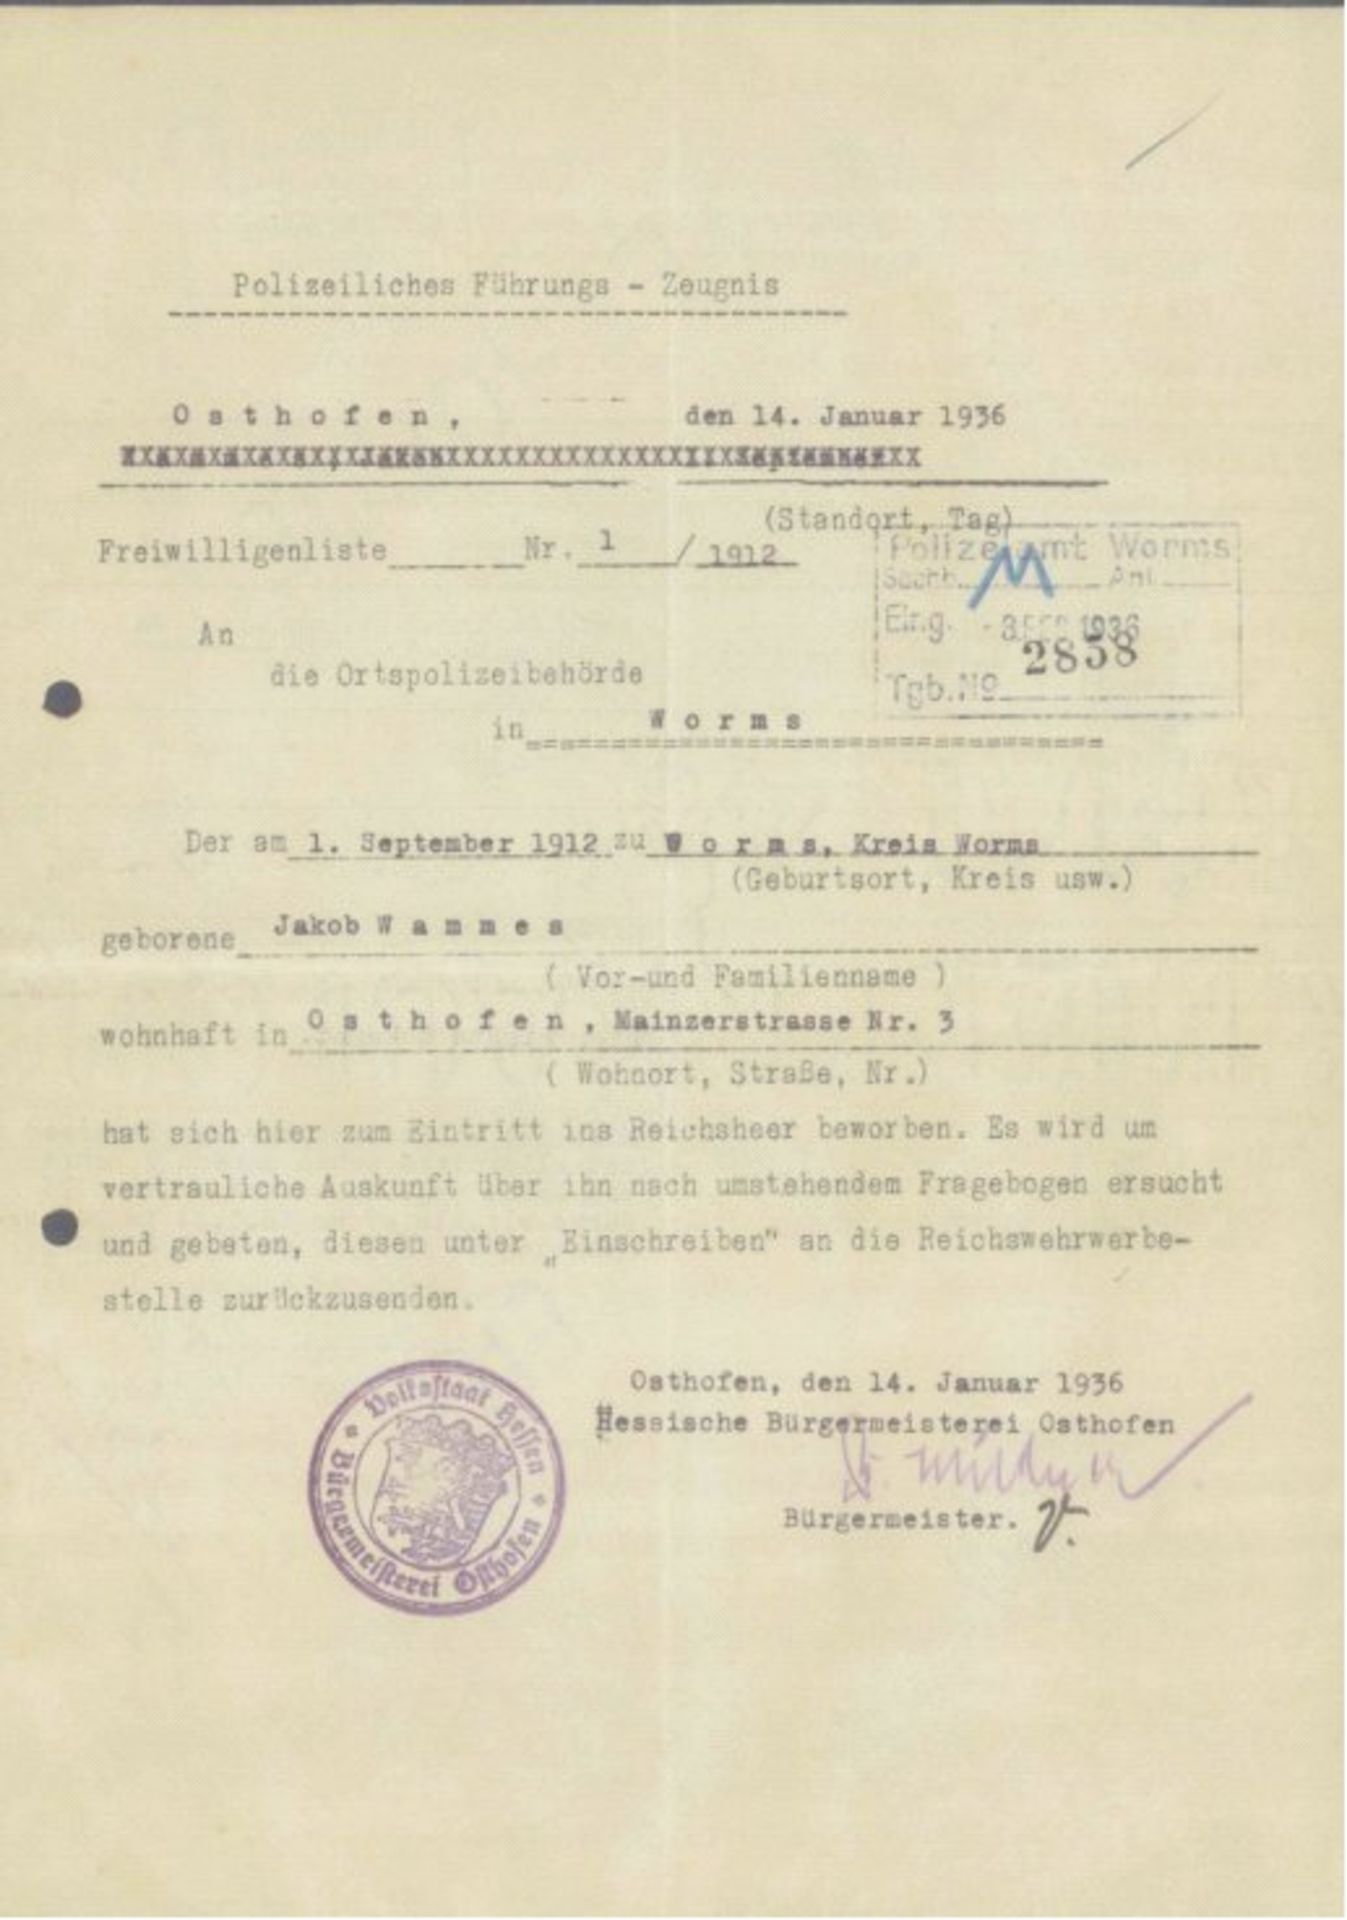 POLIZEILICHES FÜHRUNGSZEUGNIS OSTHOFEN 14.Januar 1936Zeugnis mit rückseitigem Fragebogen. Der